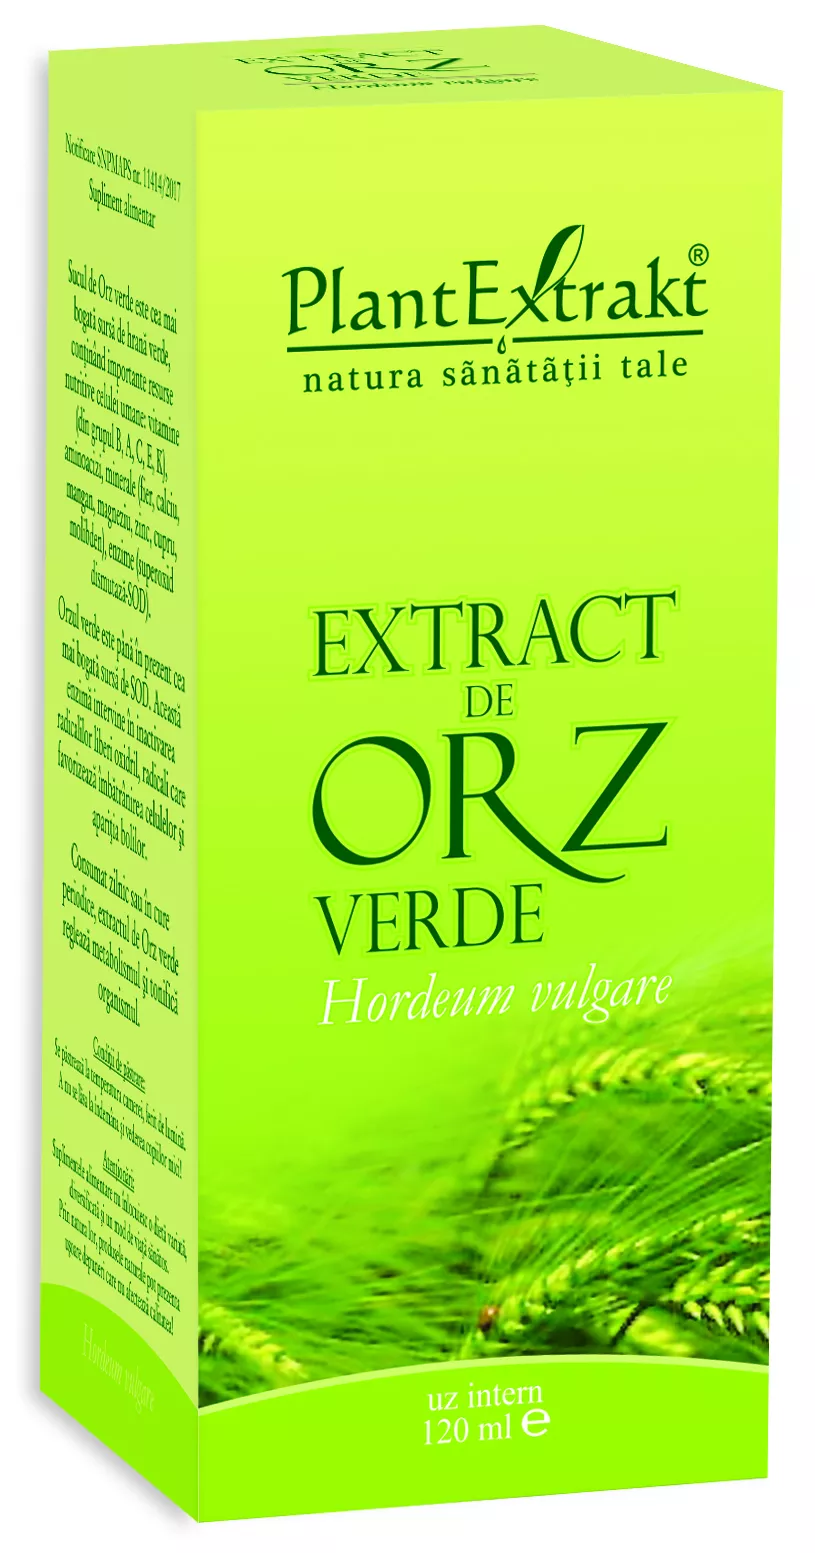 Extract de orz verde, 120 ml, Plantextrakt, [],remediumfarm.ro